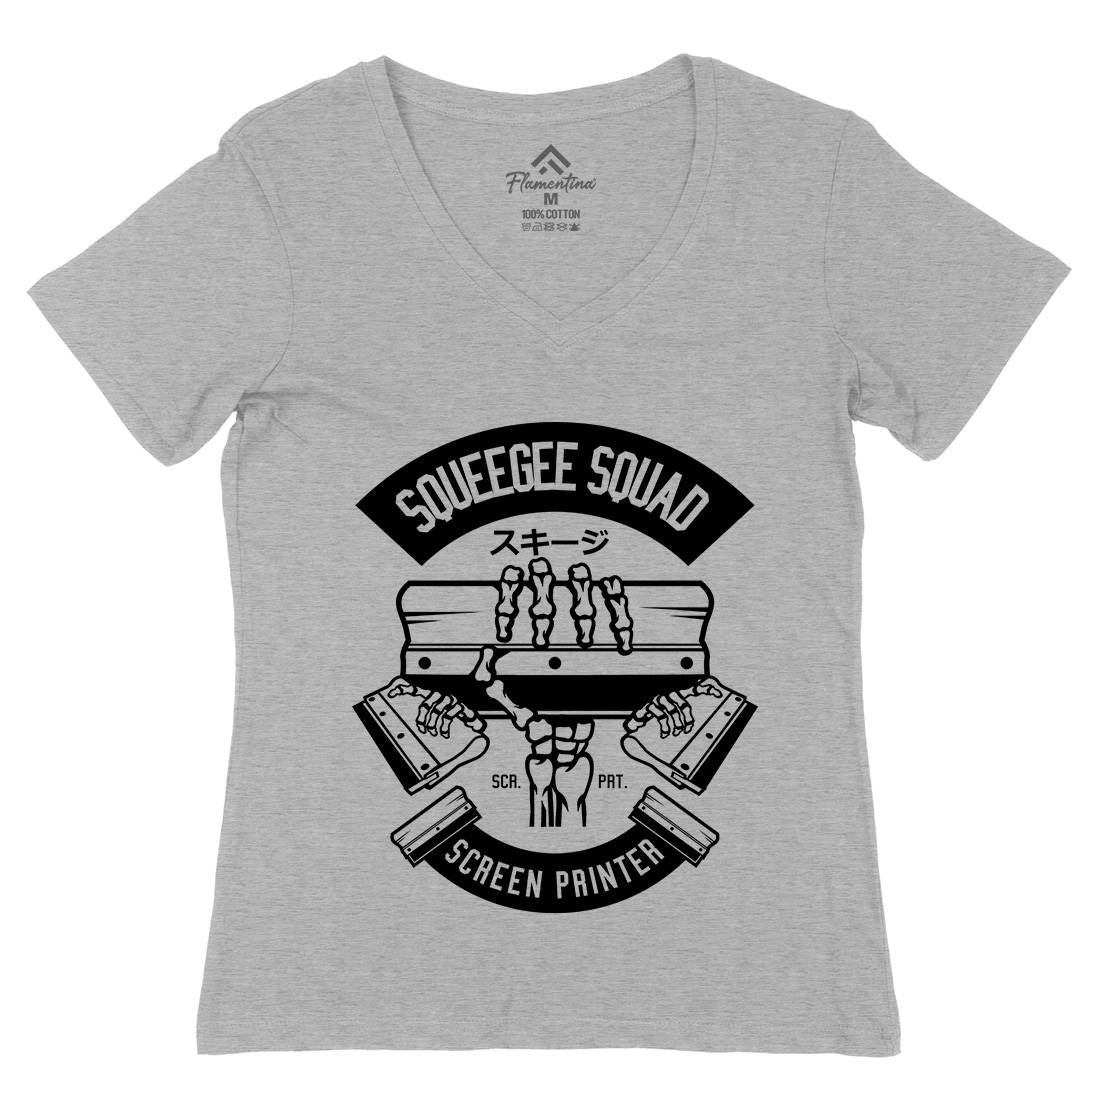 Squeegee Squad Womens Organic V-Neck T-Shirt Retro B642